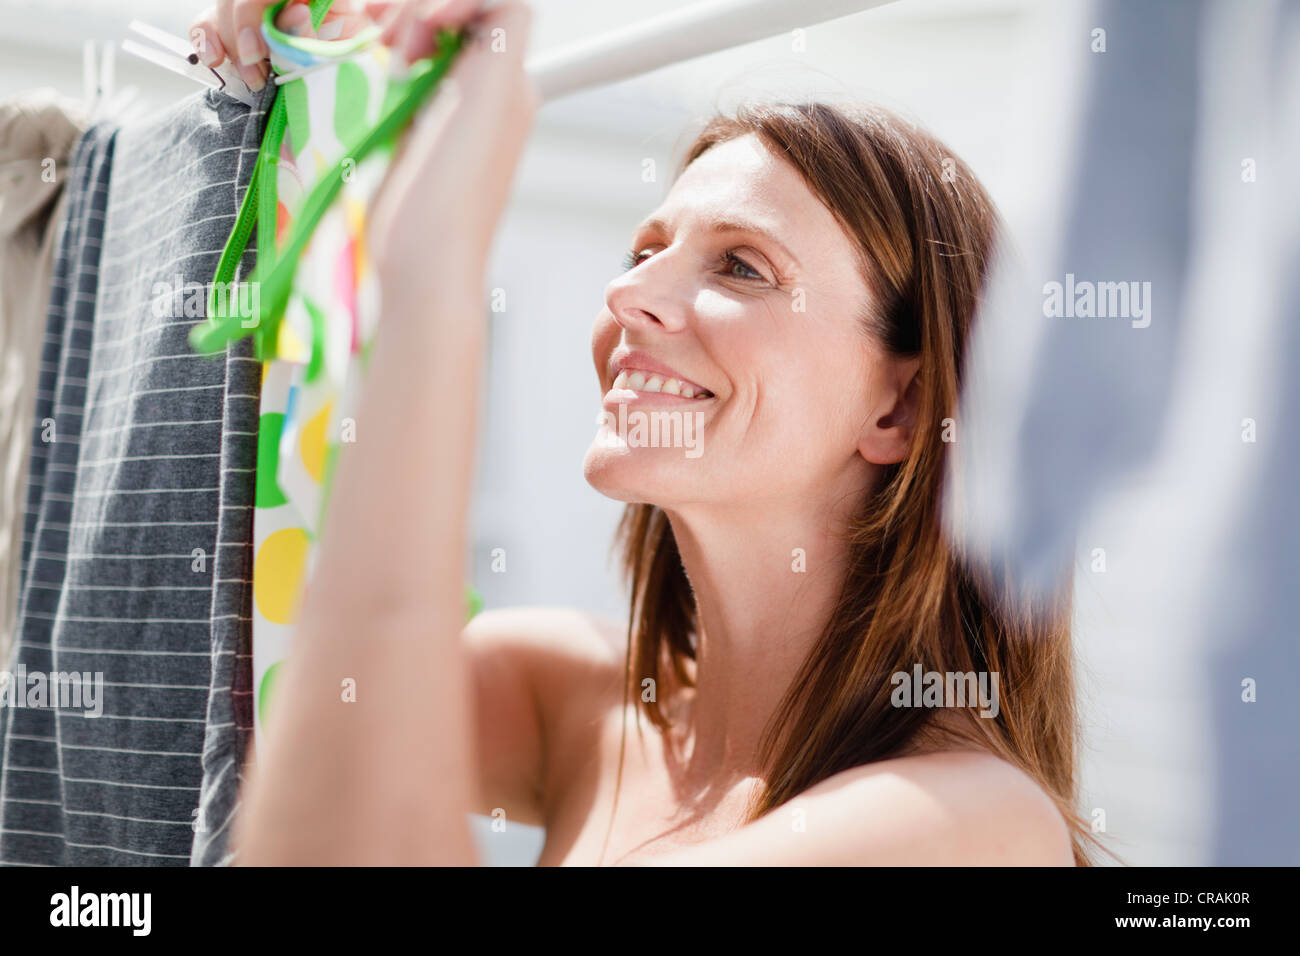 Lächelnde Frau hängende Wäsche Stockfoto